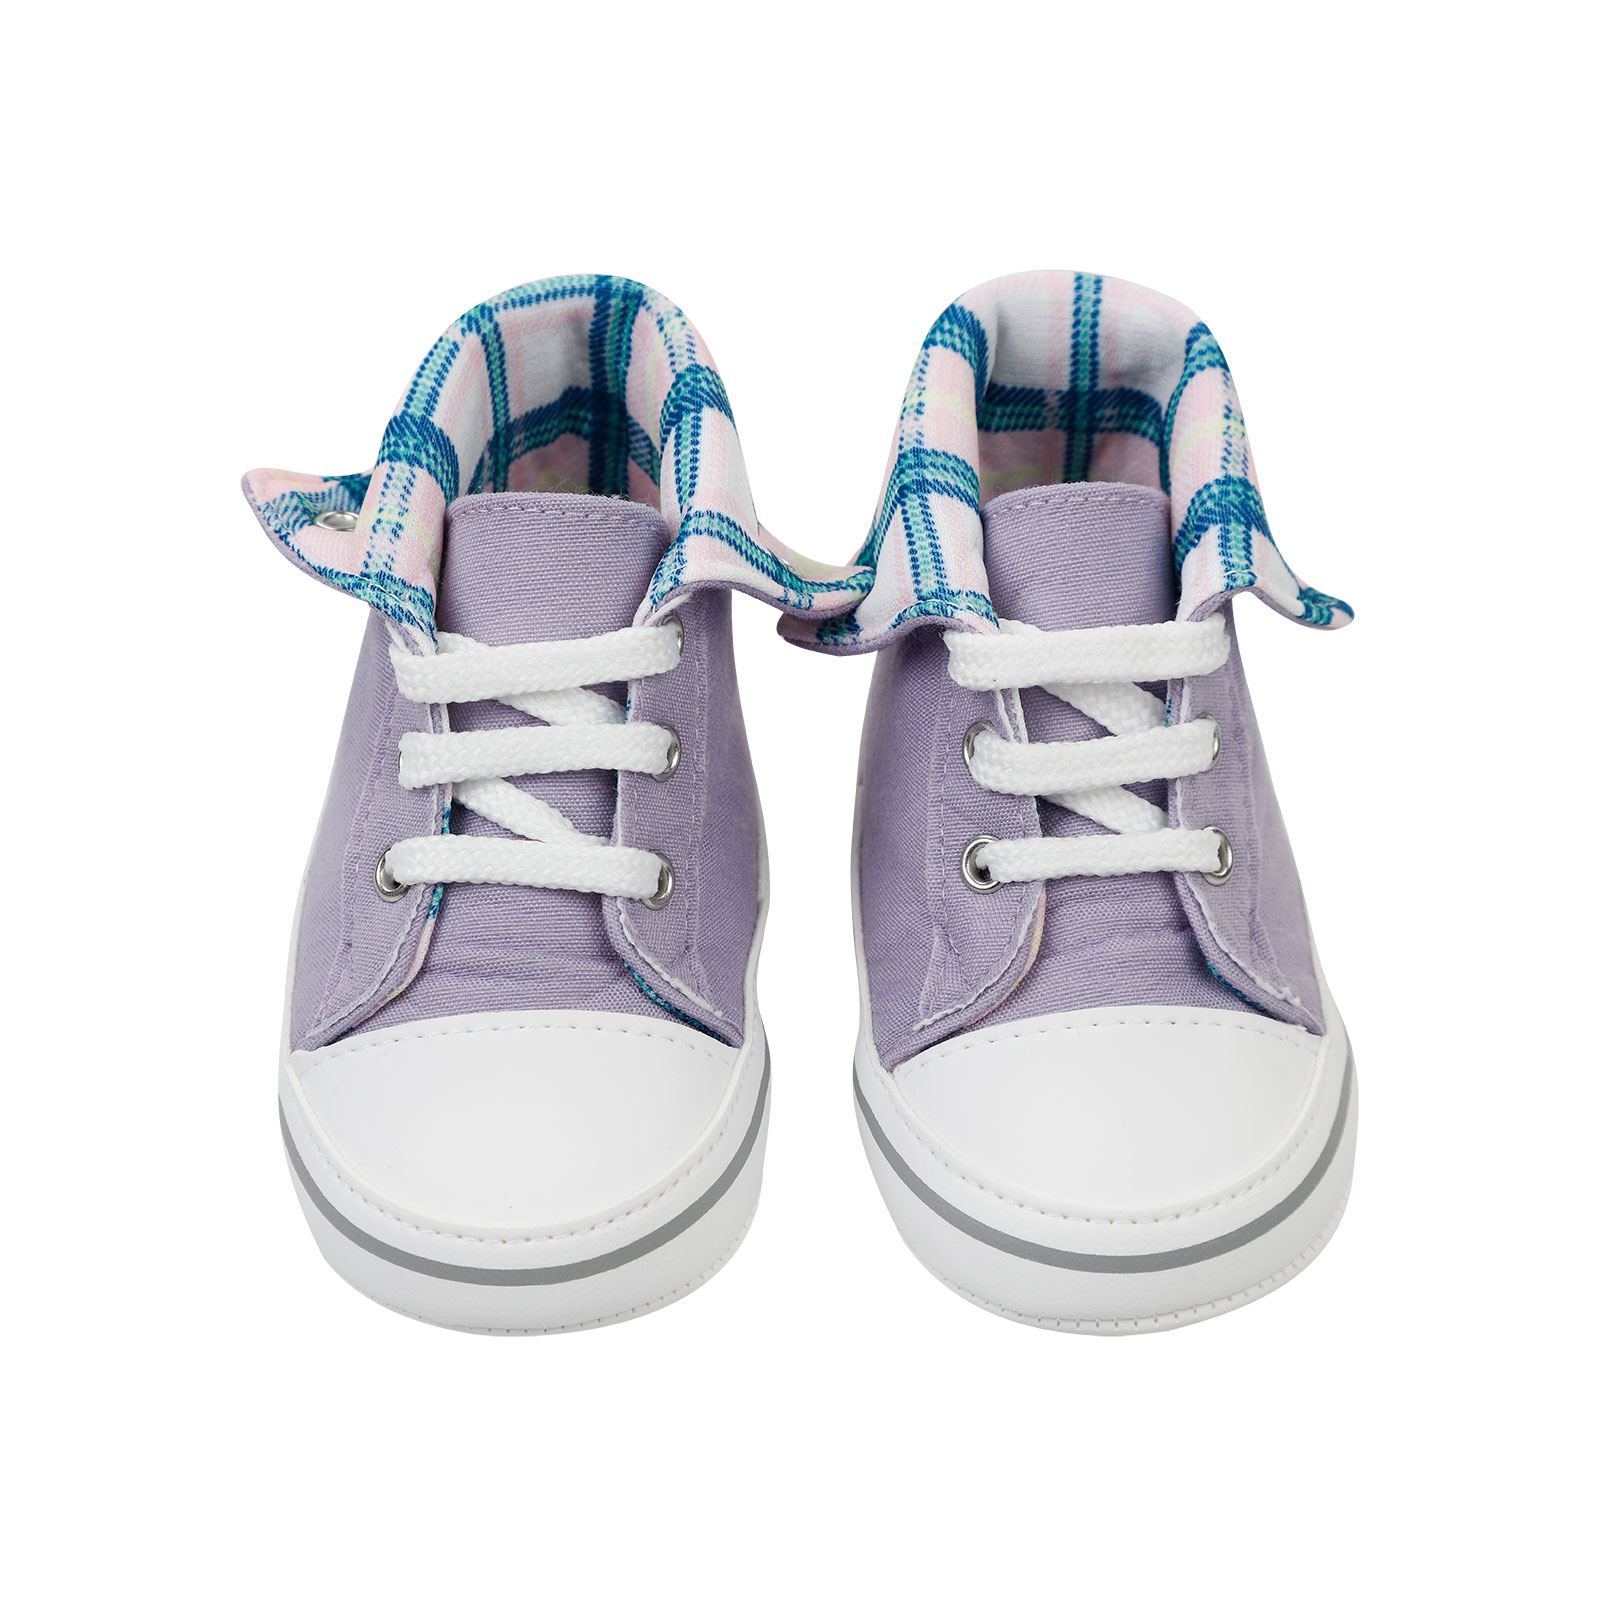 Civil Baby Kız Bebek Patik Ayakkabı 17-19 Numara Mor